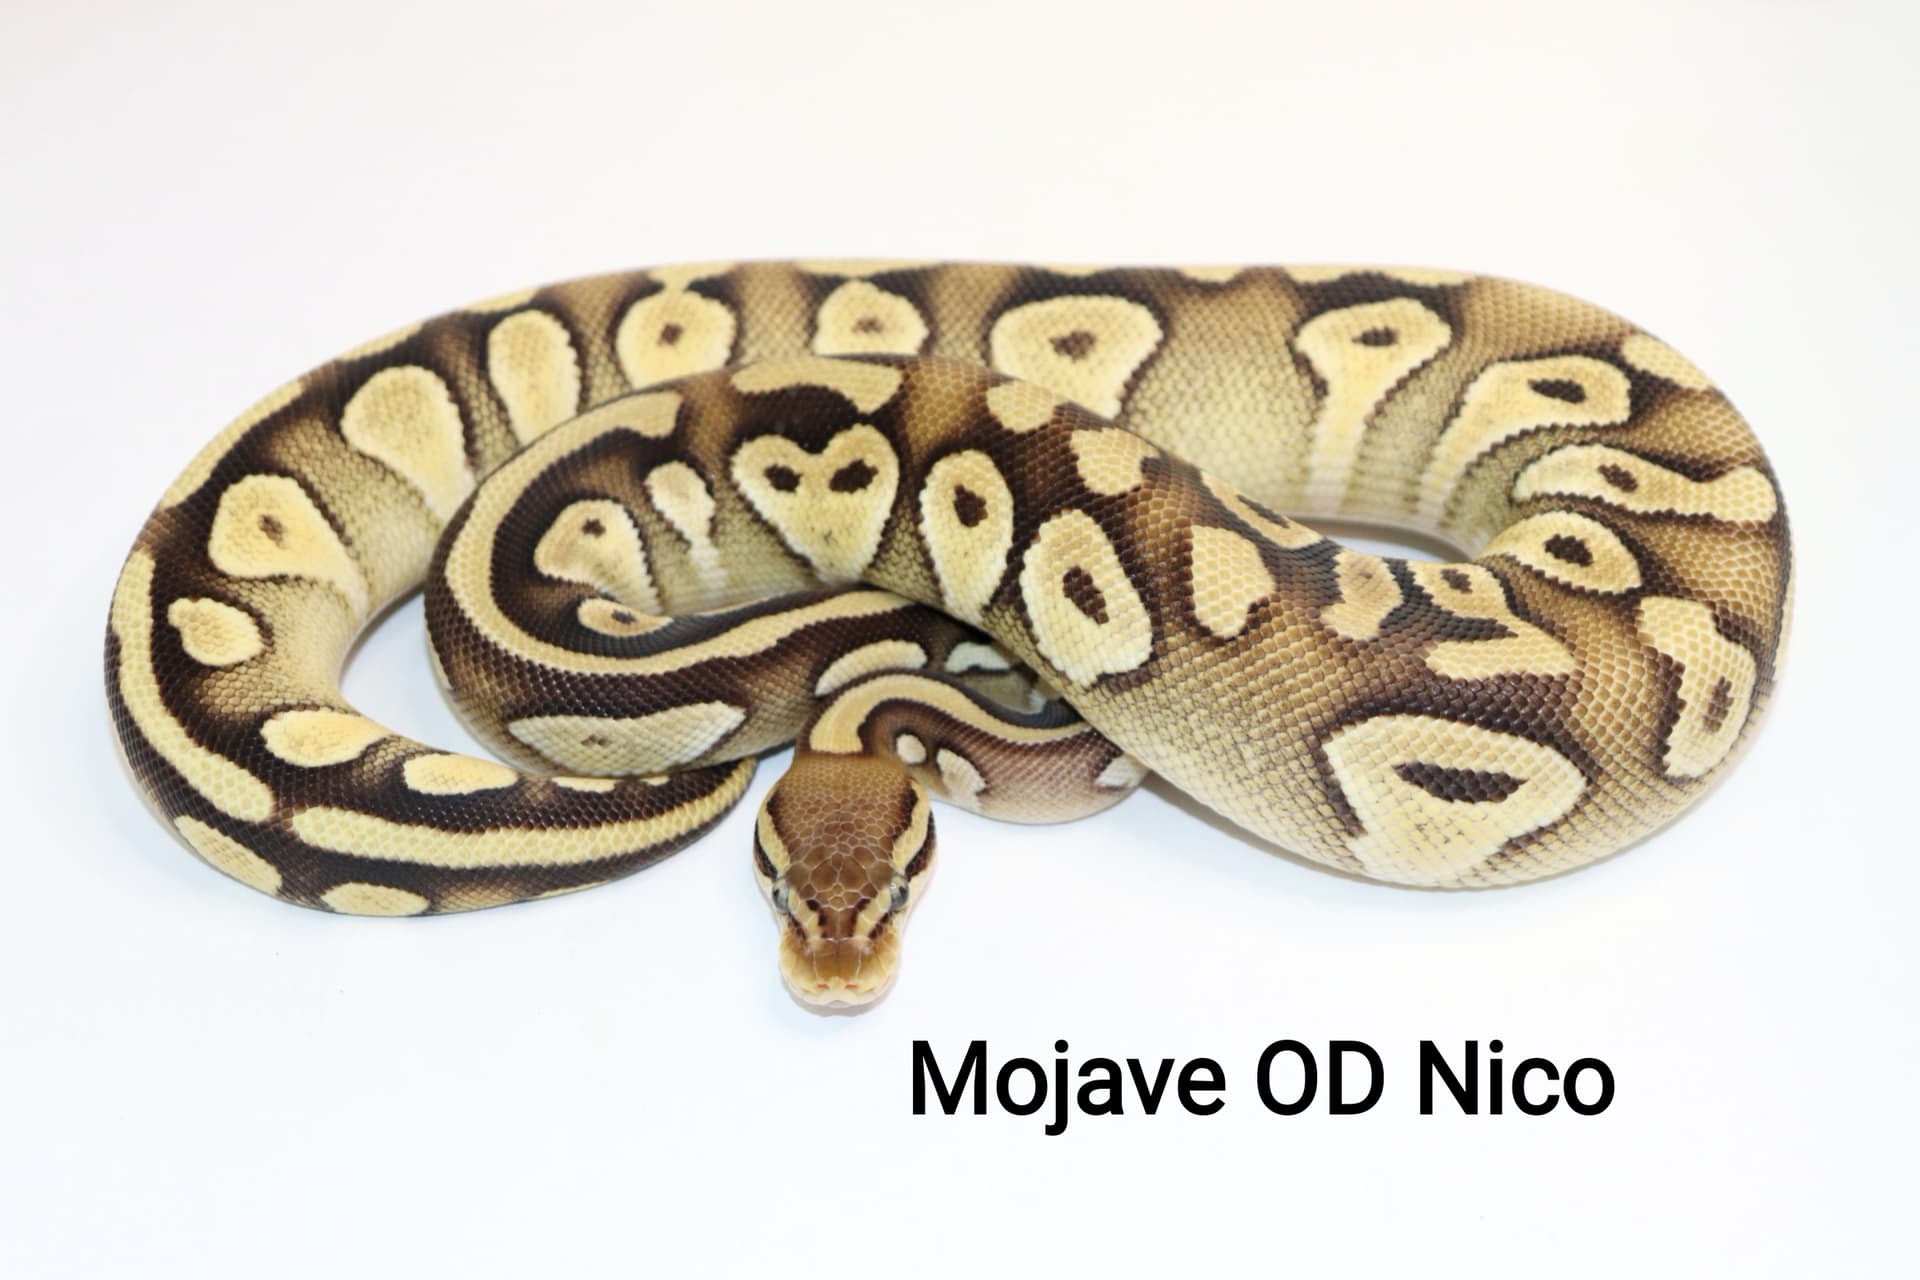 Mojave OD Nico by DNJ Pythons